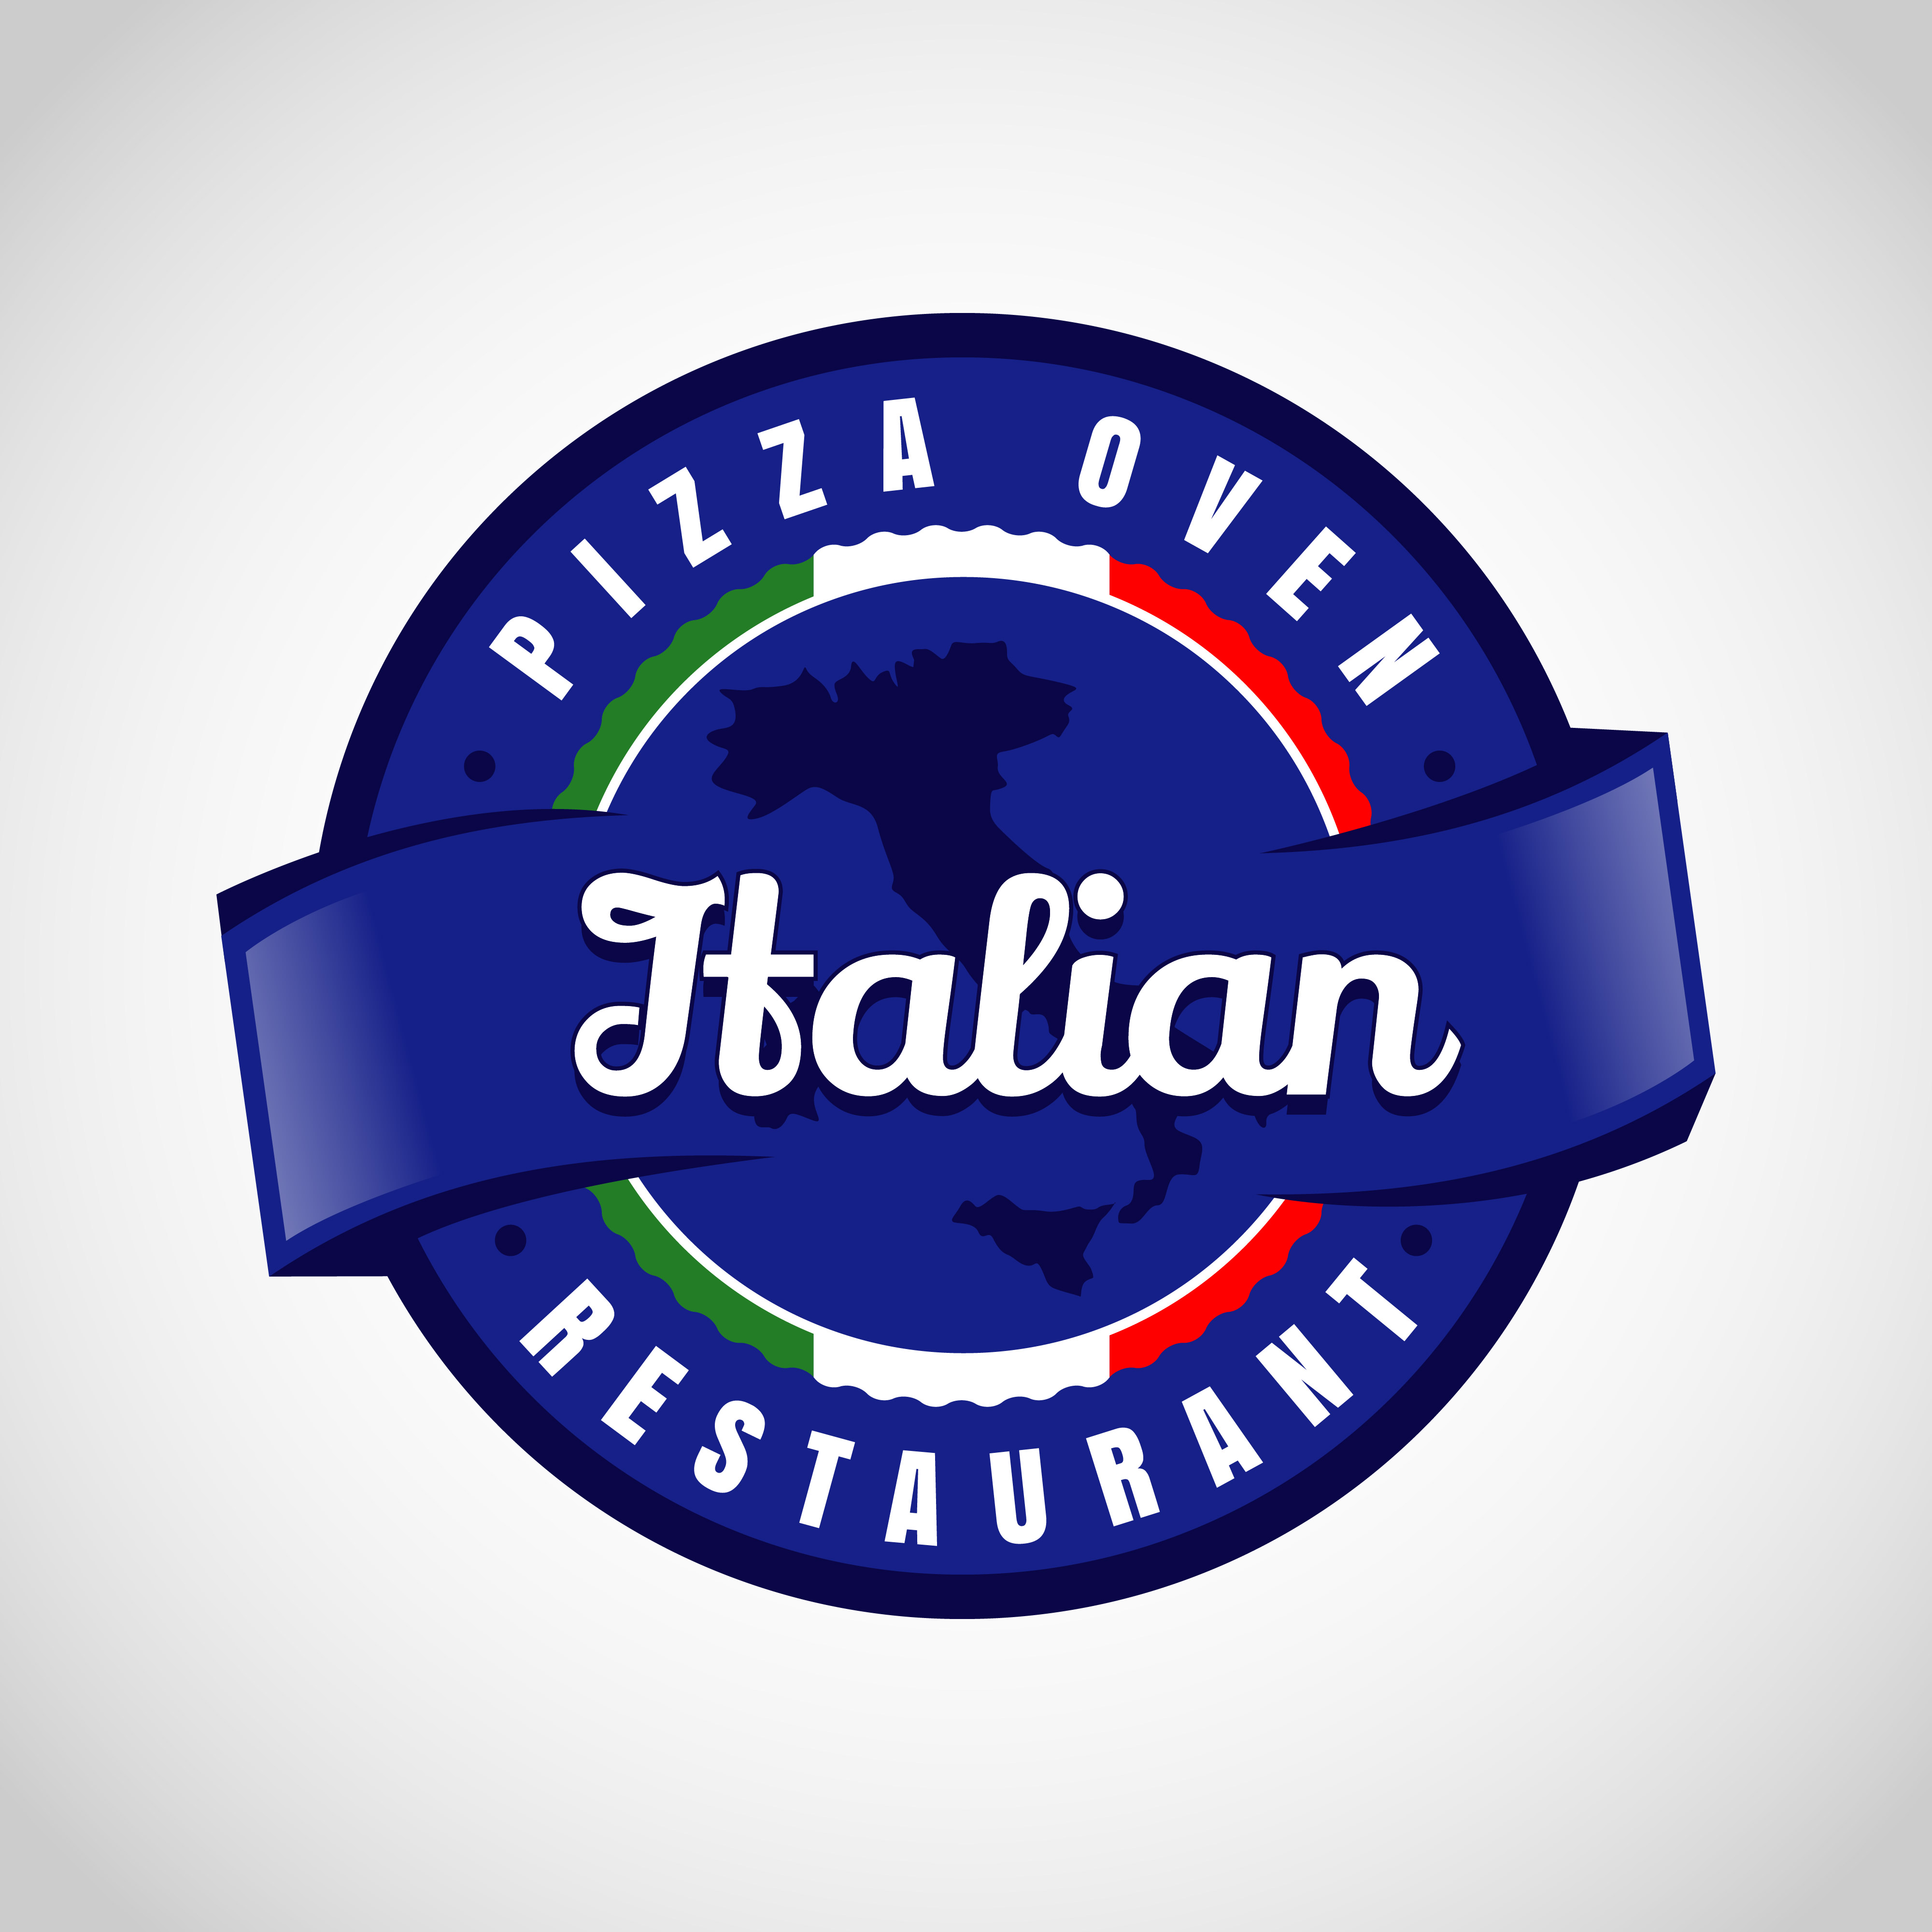 Italian Blue Pizza Logo 659869 - Download Free Vectors ...